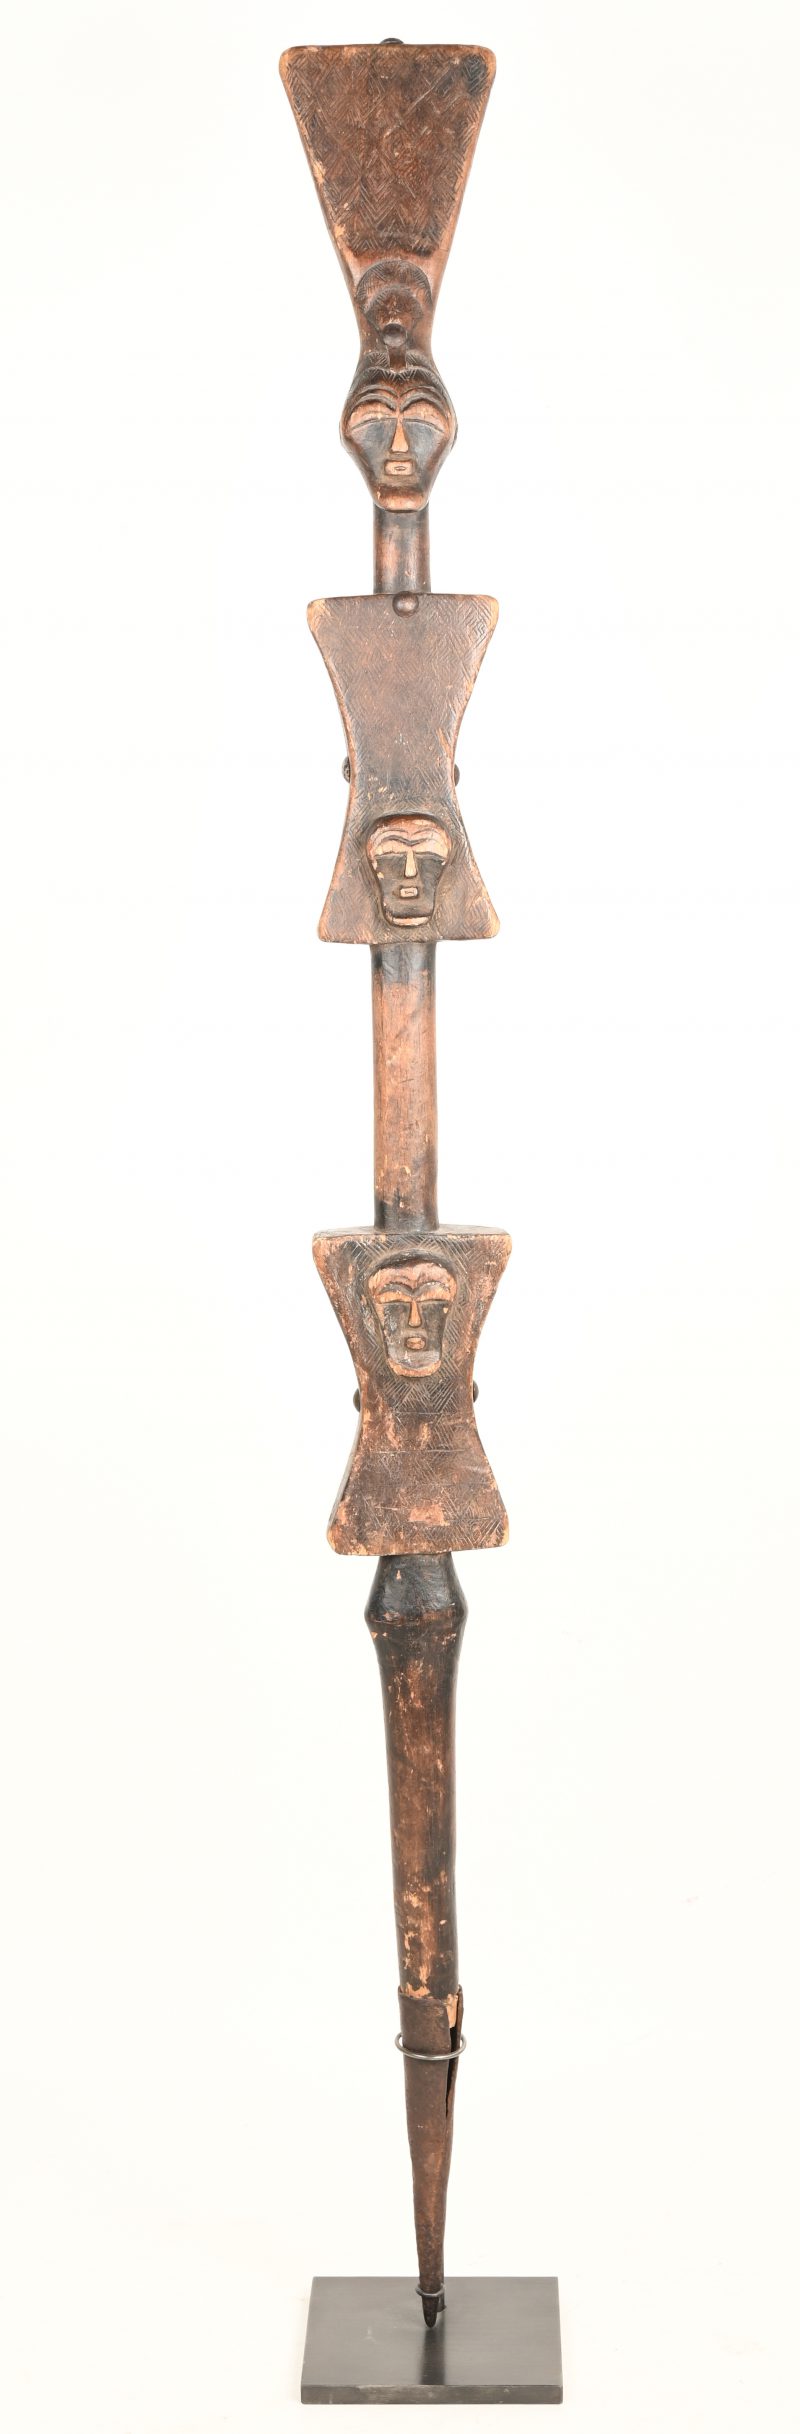 Een scepter op een voetje van de Songye stam uit Zuidoost Congo .De scepter symboliseerd macht , invloed , autoritei en privilege .Met certificaat .